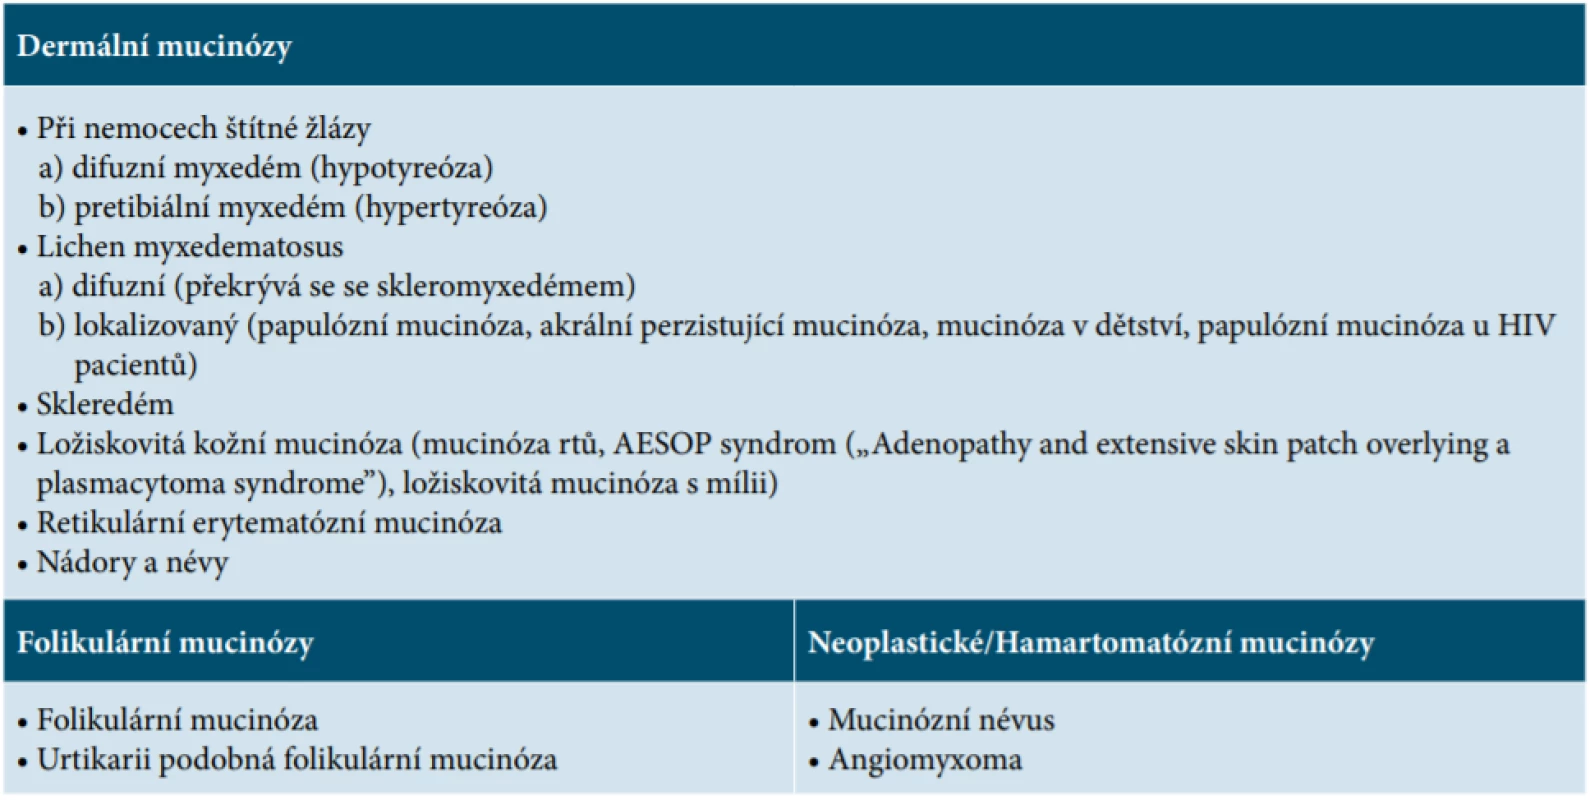 Primární mucinózy